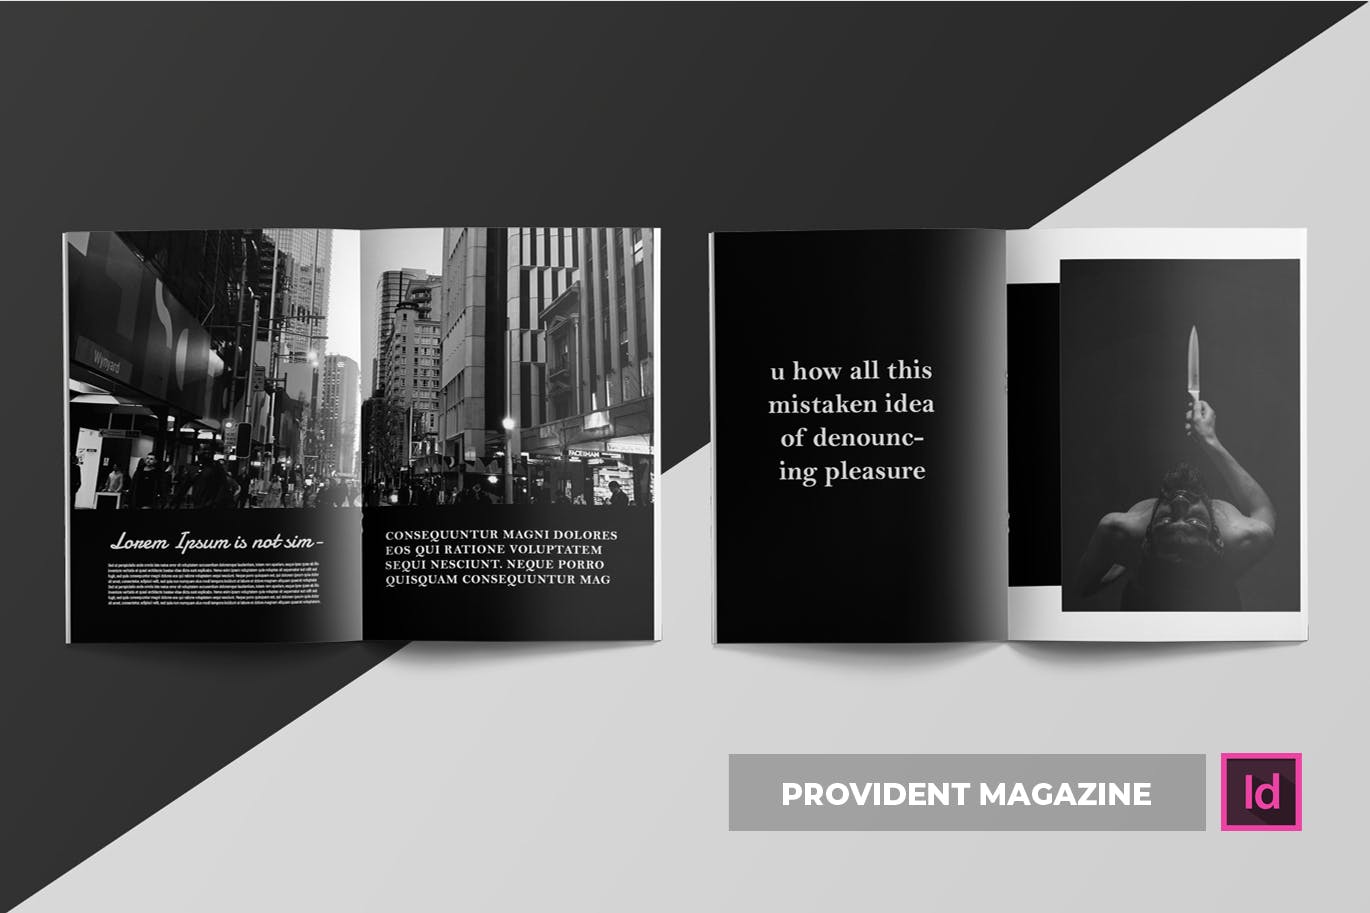 高端摄影主题A4素材库精选杂志版式设计INDD模板 Provident | Magazine Template插图(3)